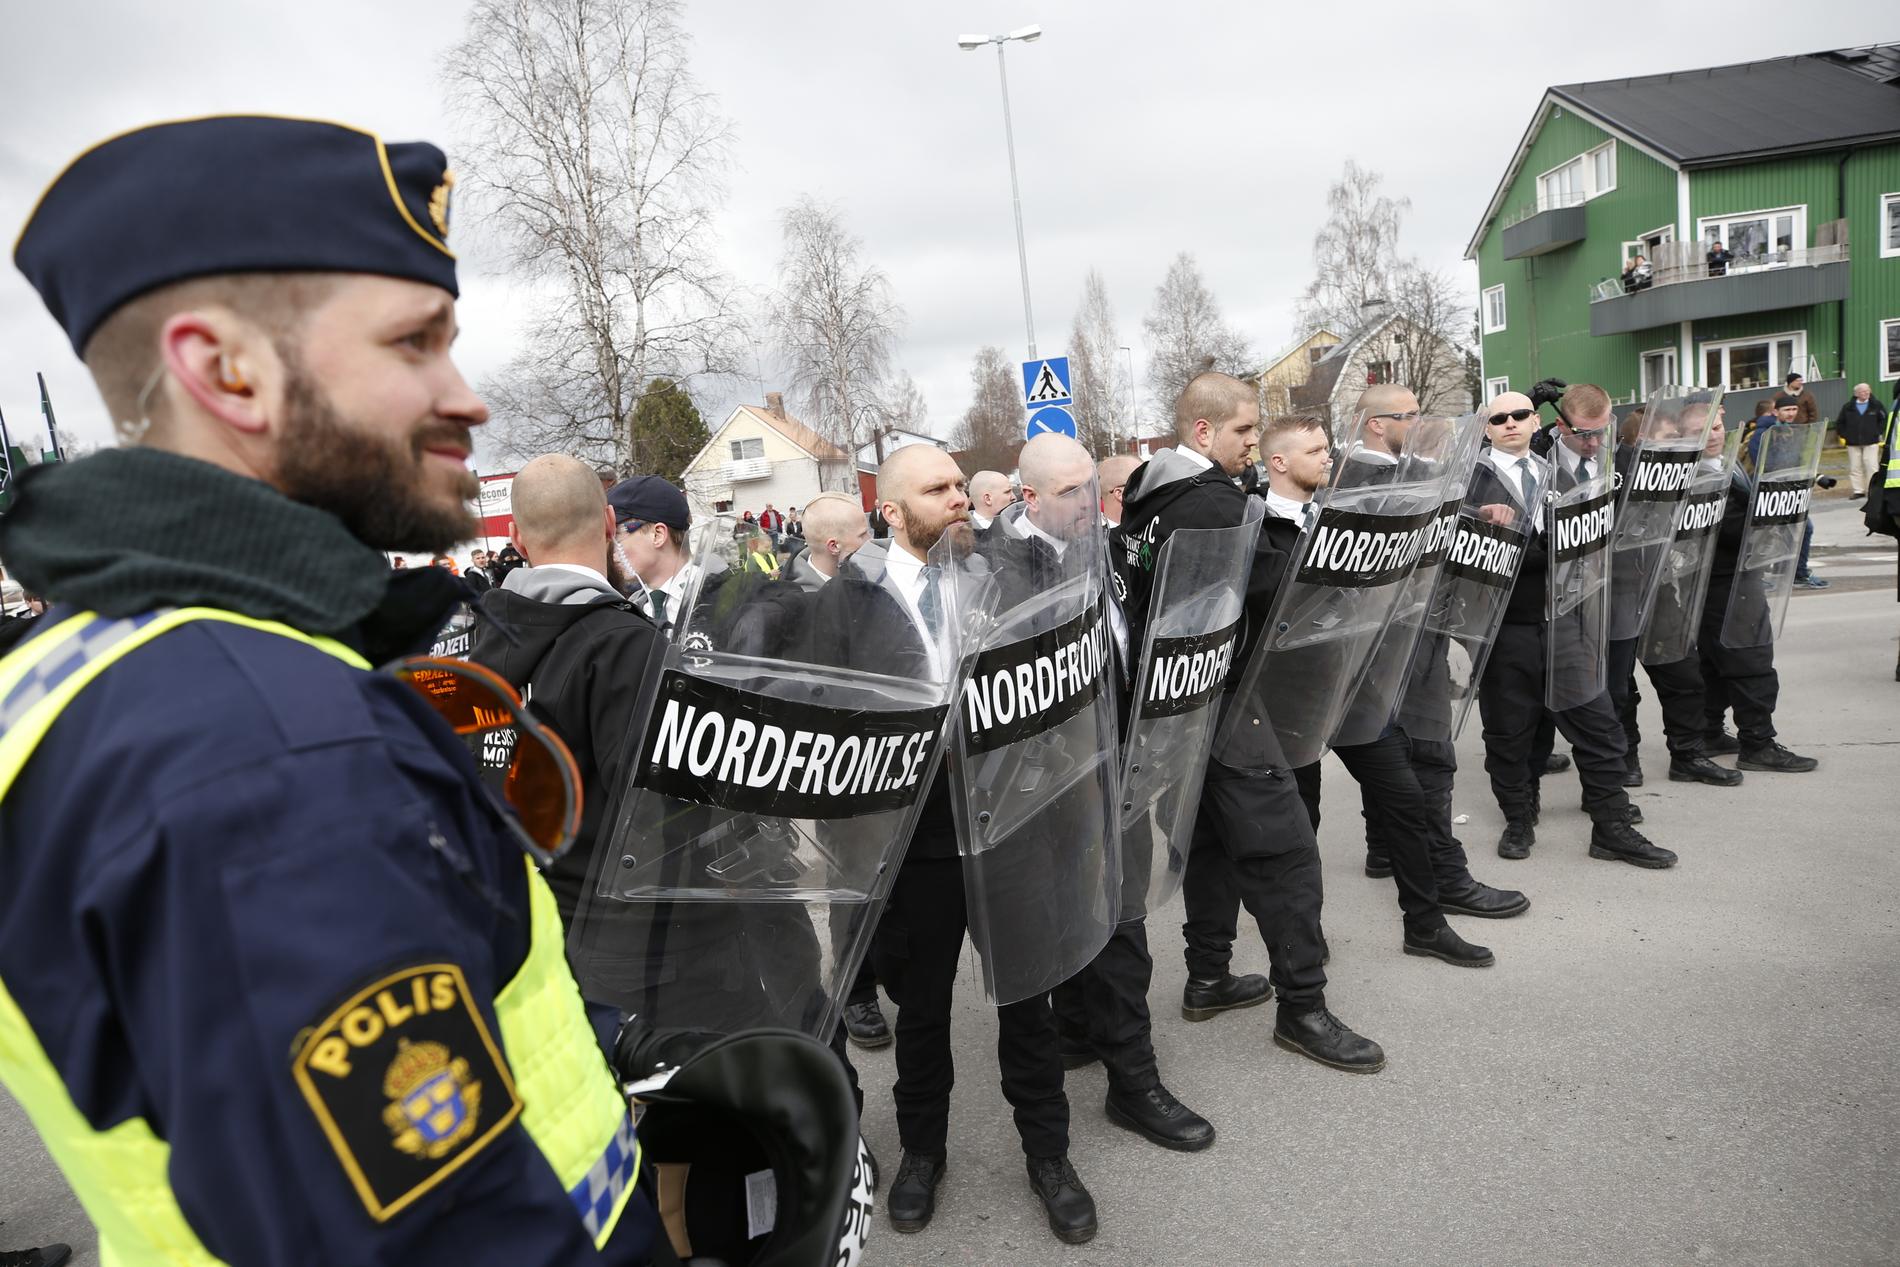 Den nazistiska organisationen Nordiska motståndsrörelsens planerar att demonstrera i Ludvika och Kungälv på första maj. Här en bild från NMR:s förstamajtåg i Ludvika 2018.